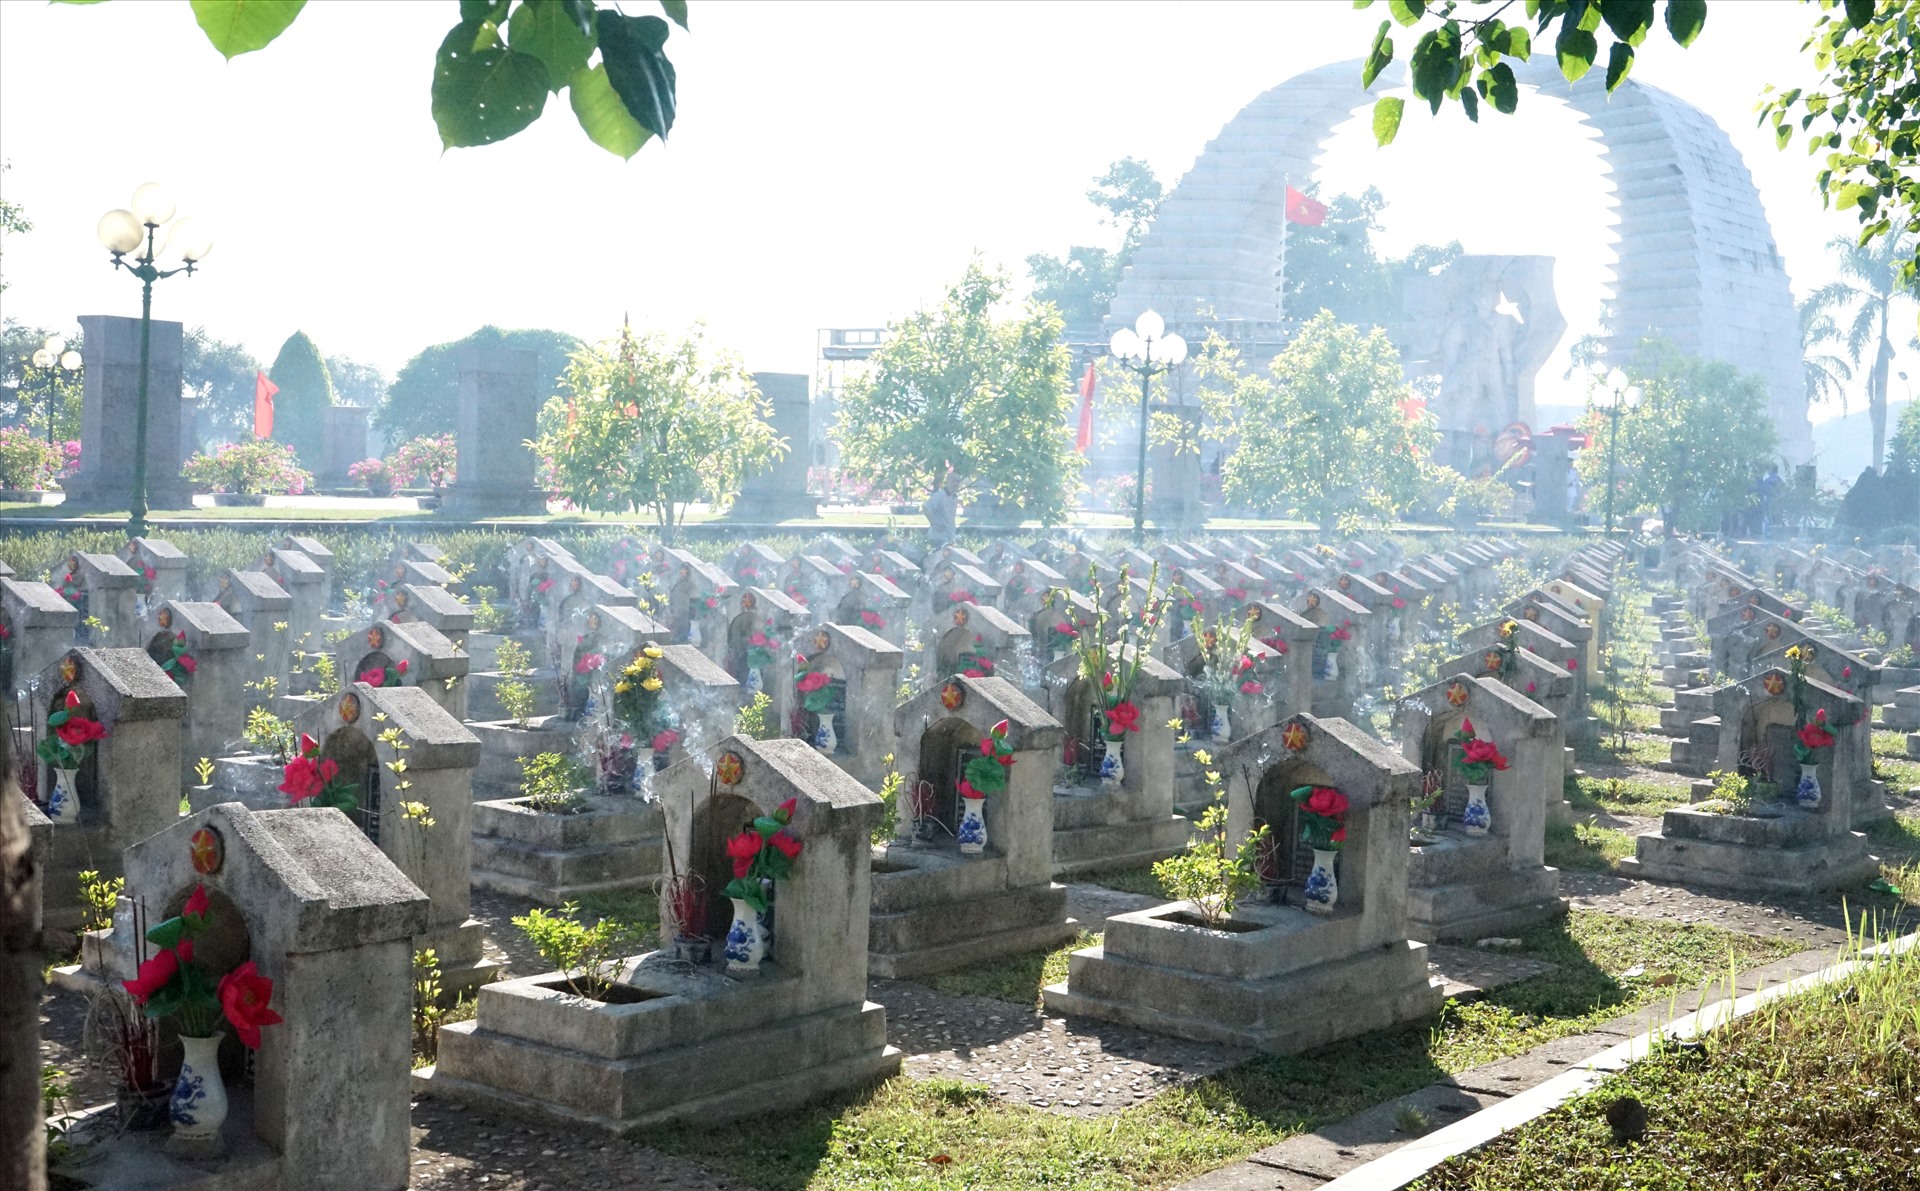 Được biết, nghĩa trang Hàm Rồng có khoảng gần 2.000 mộ liệt sĩ. Đây cũng được xem là một nghĩa trang lớn của tỉnh Thanh Hóa. Ảnh: Quách Du